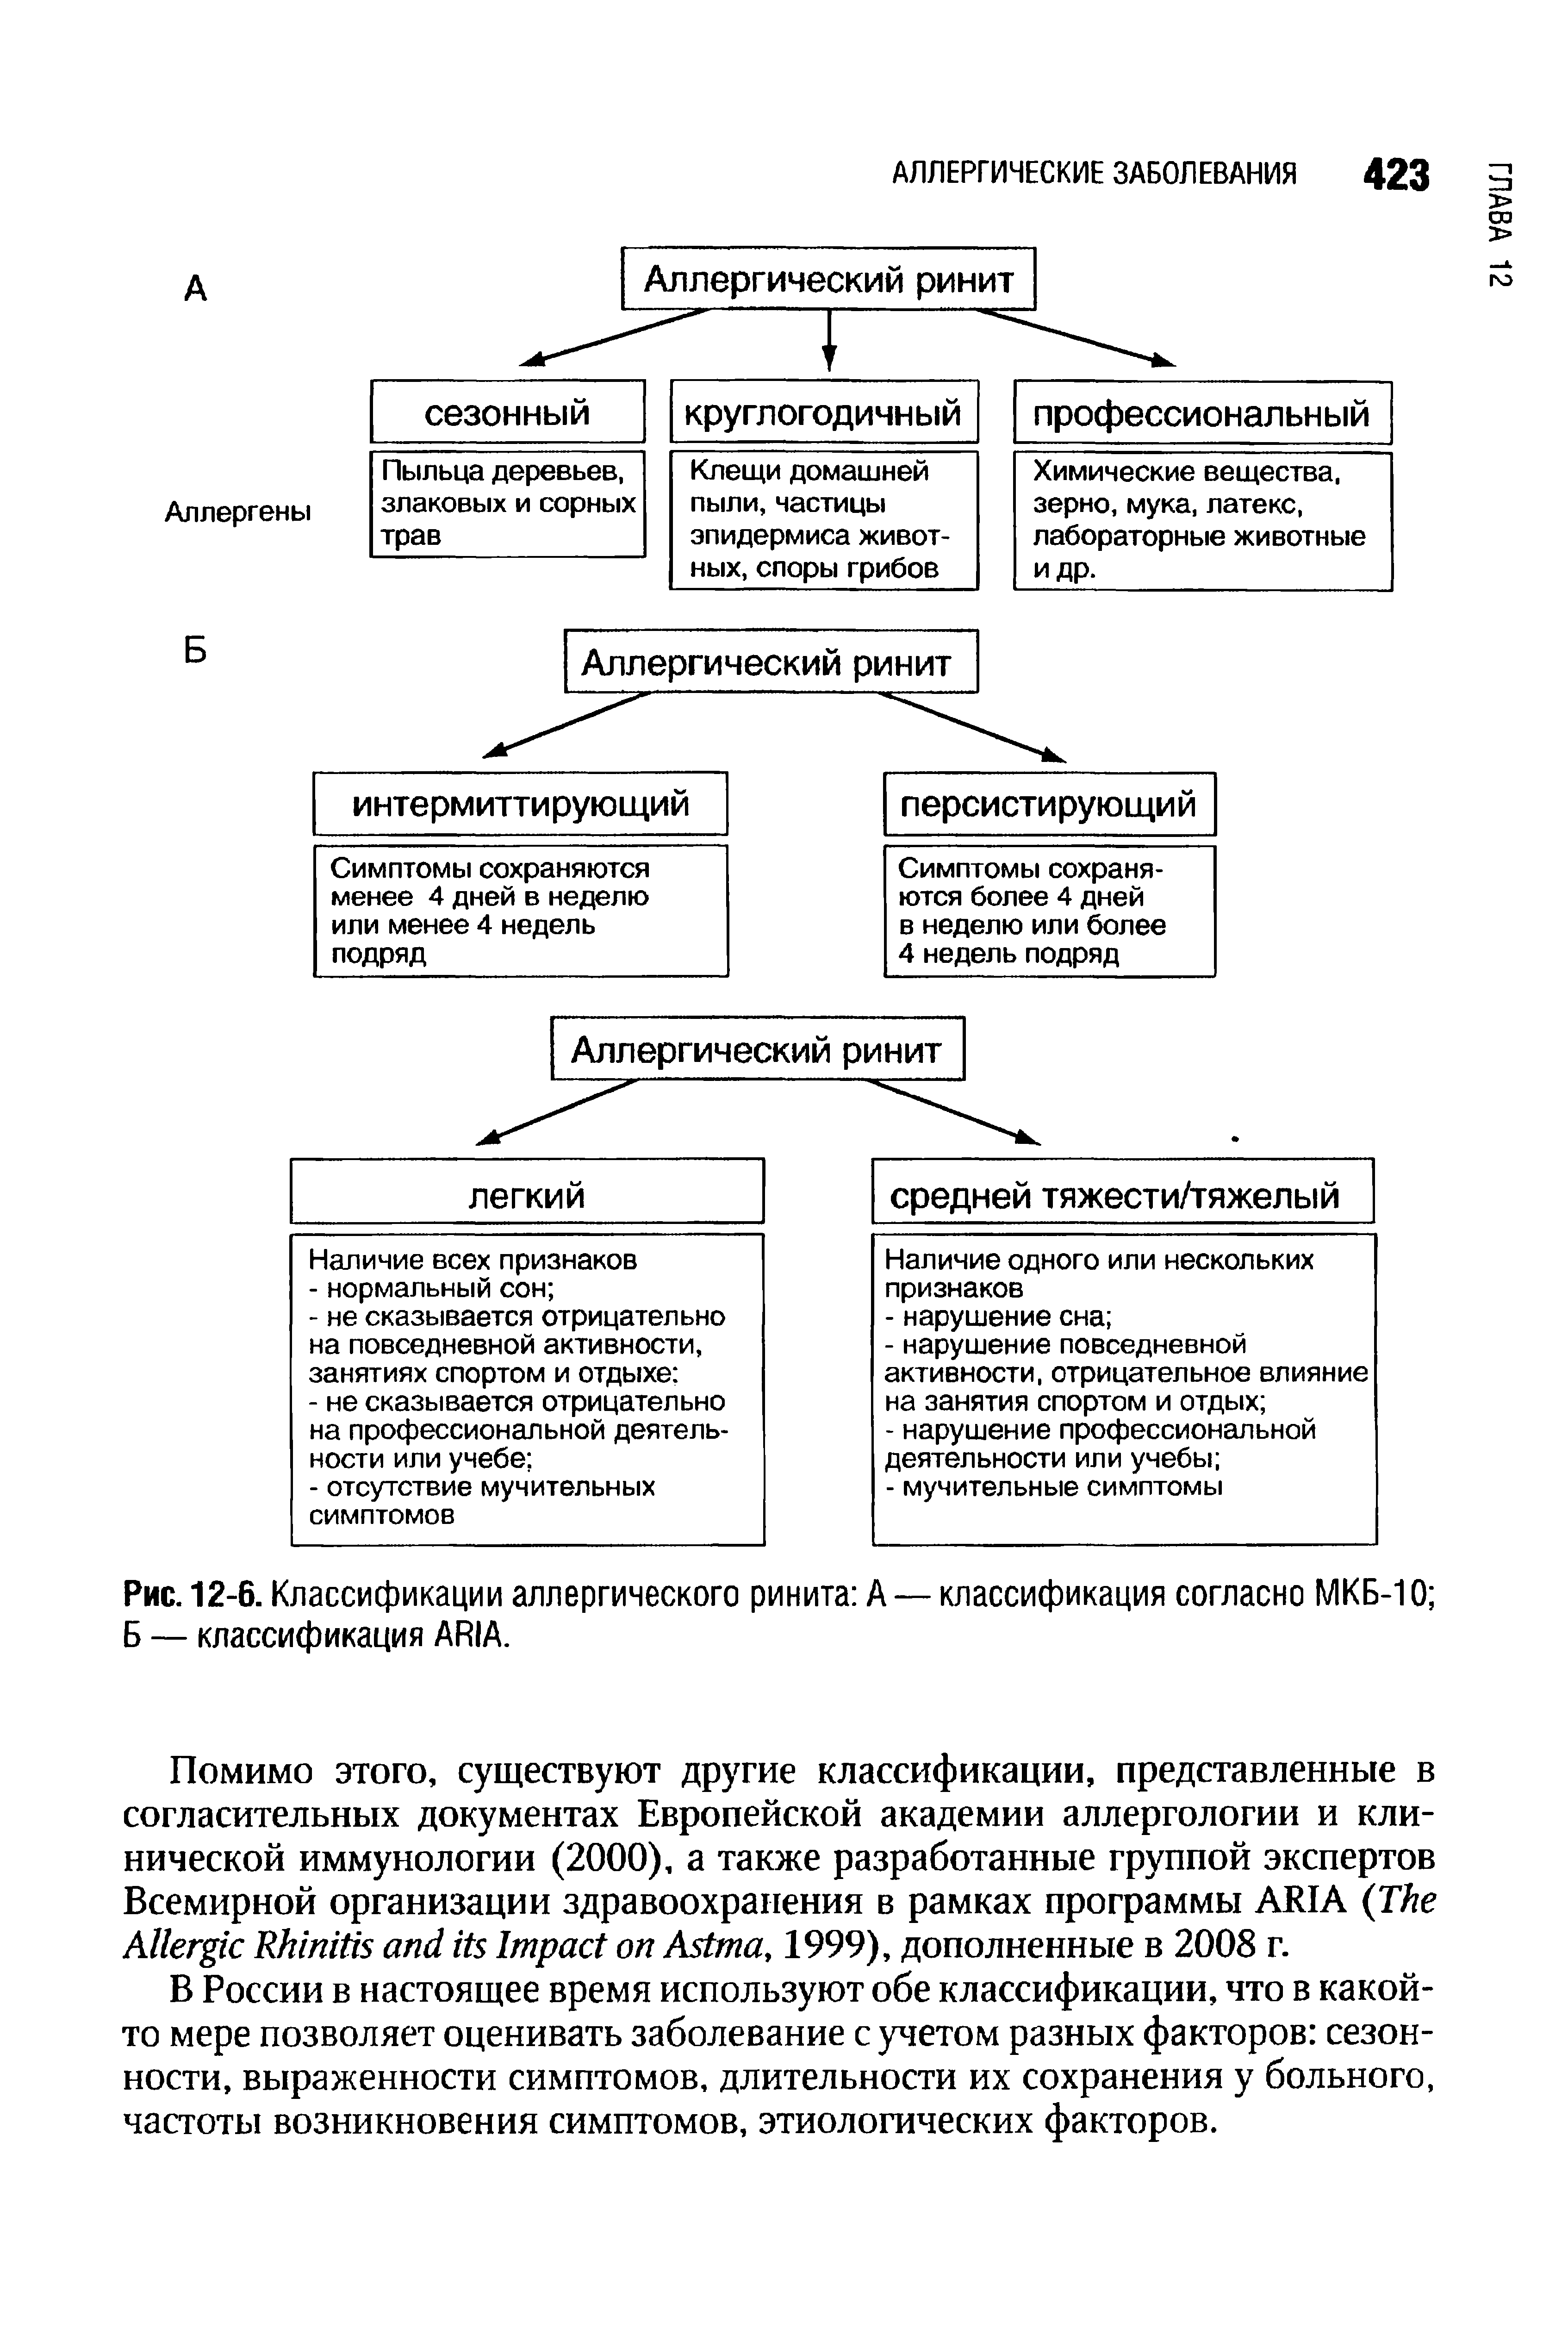 Рис. 12-6. Классификации аллергического ринита А — классификация согласно МКБ-10 Б — классификация ARIA.